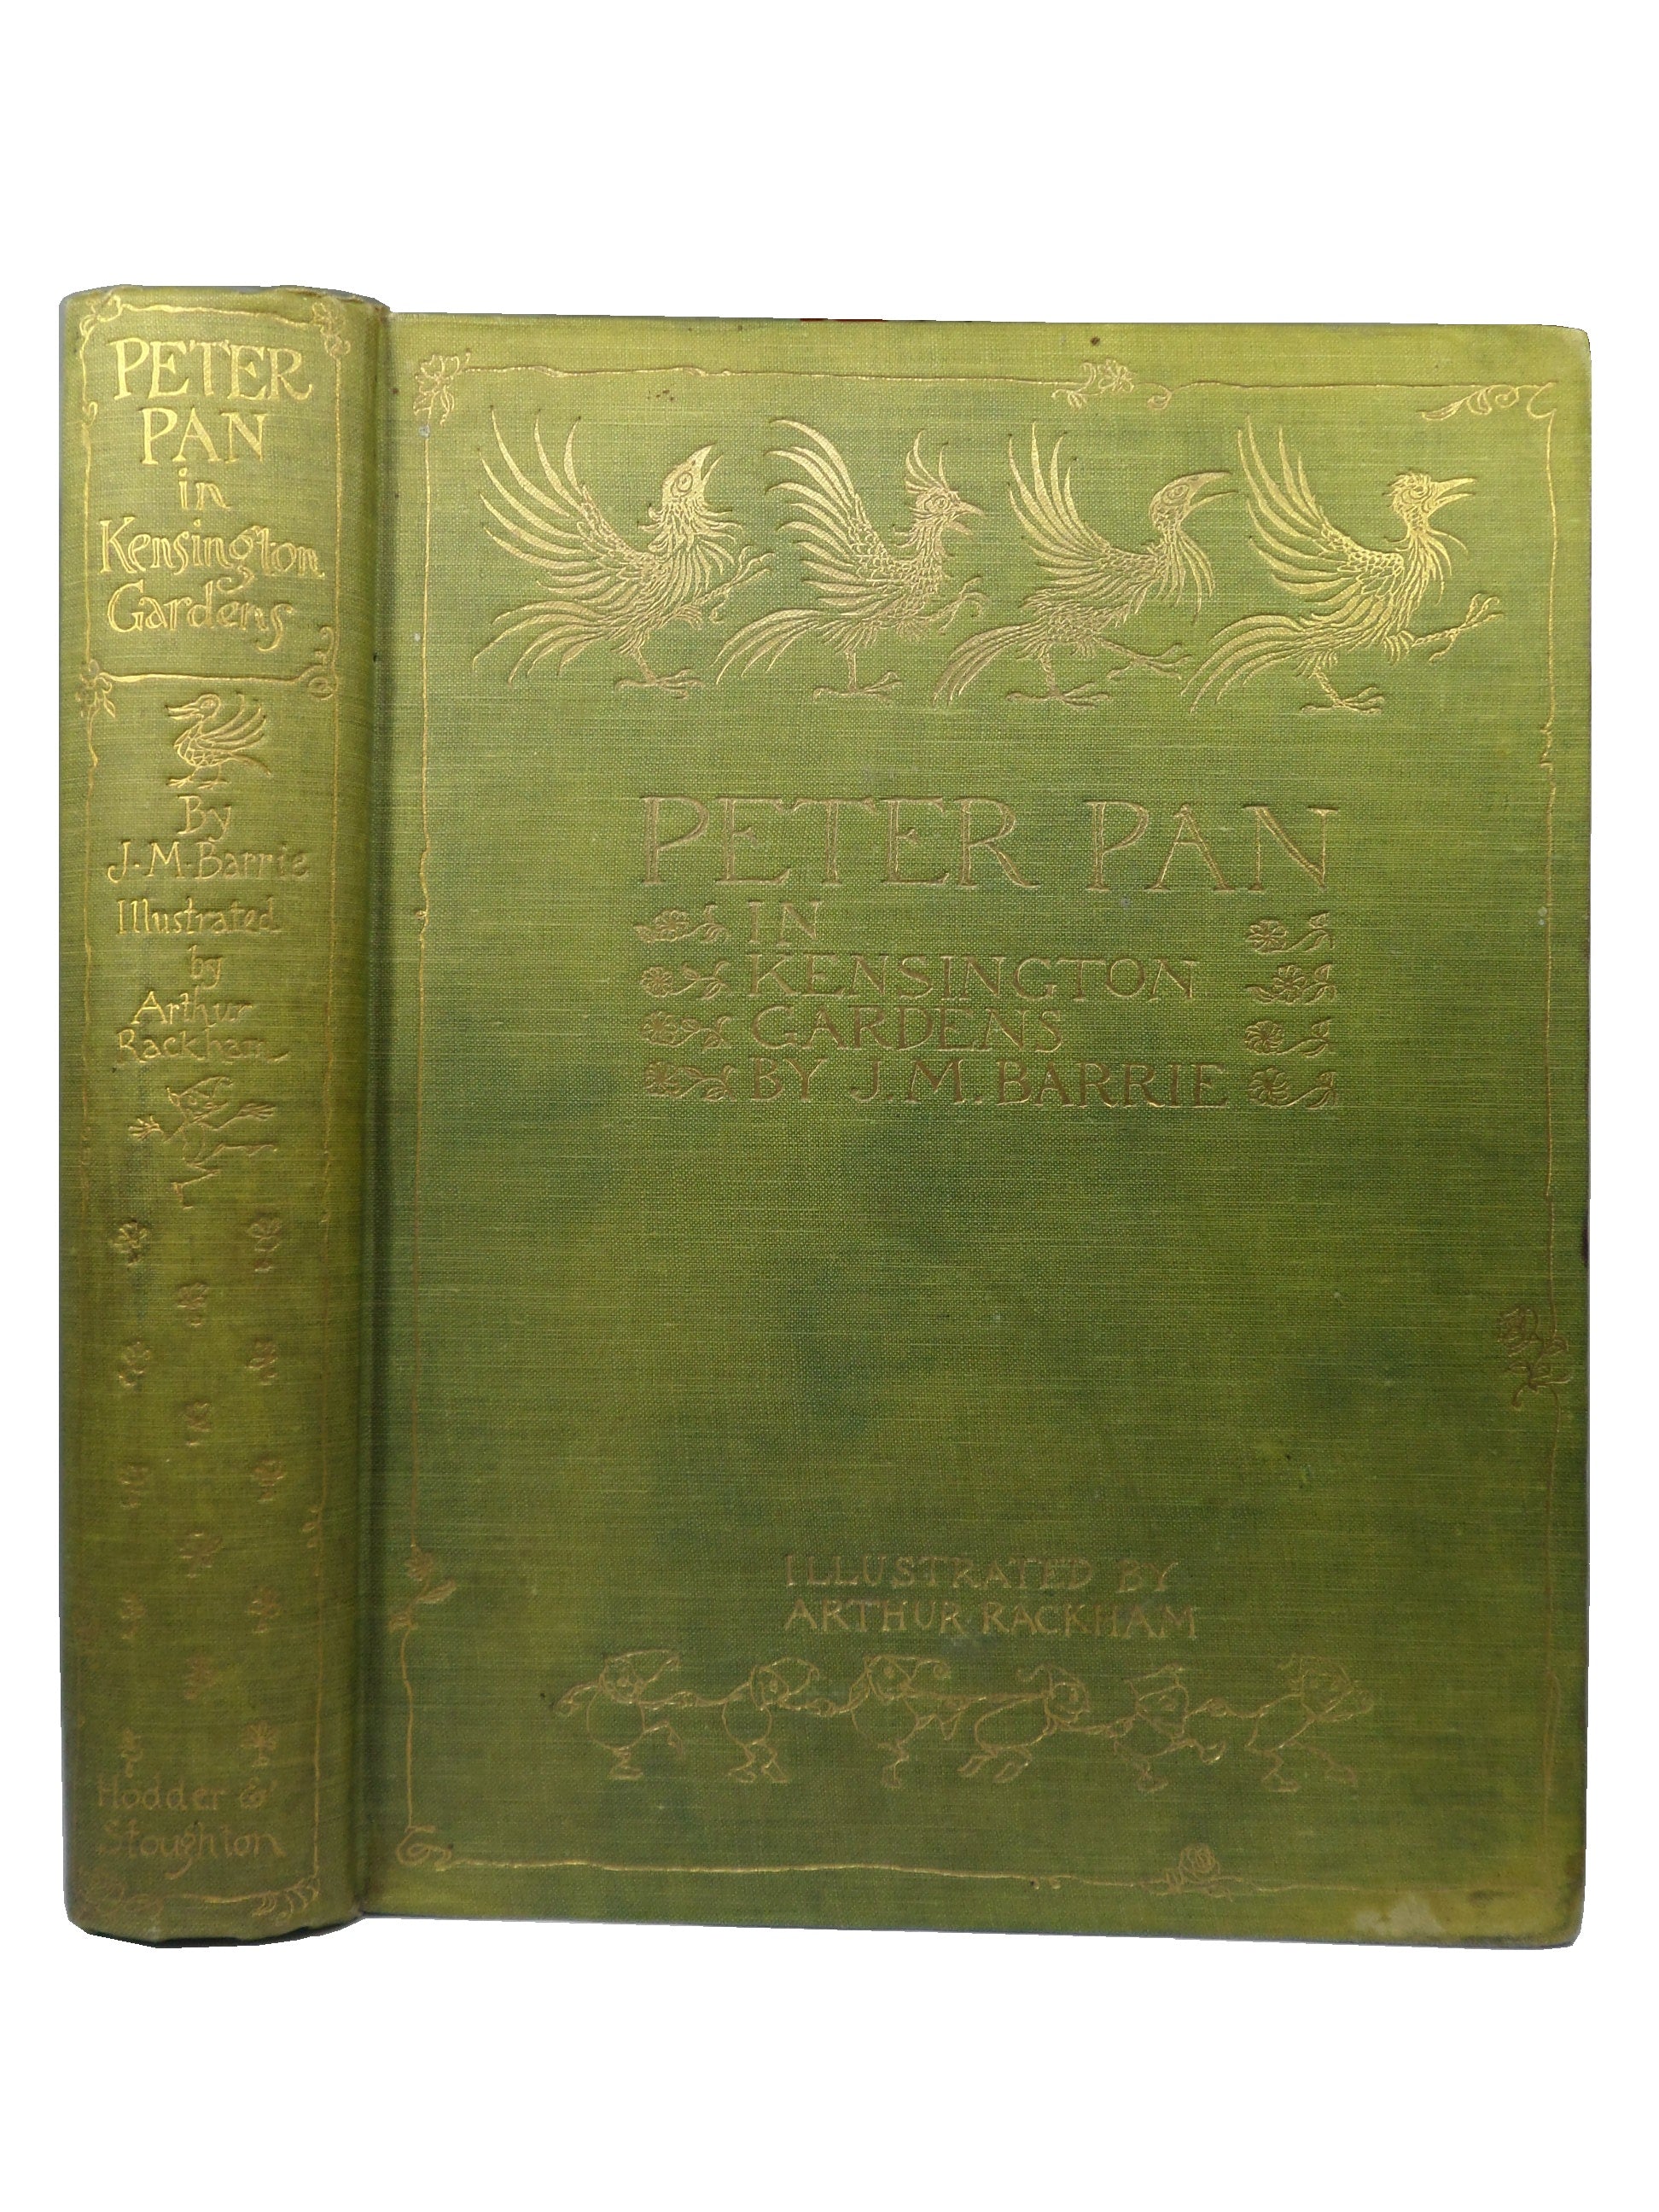 PETER PAN IN KENSINGTON GARDENS BY J.M. BARRIE 1912 ARTHUR RACKHAM ILLUSTRATIONS